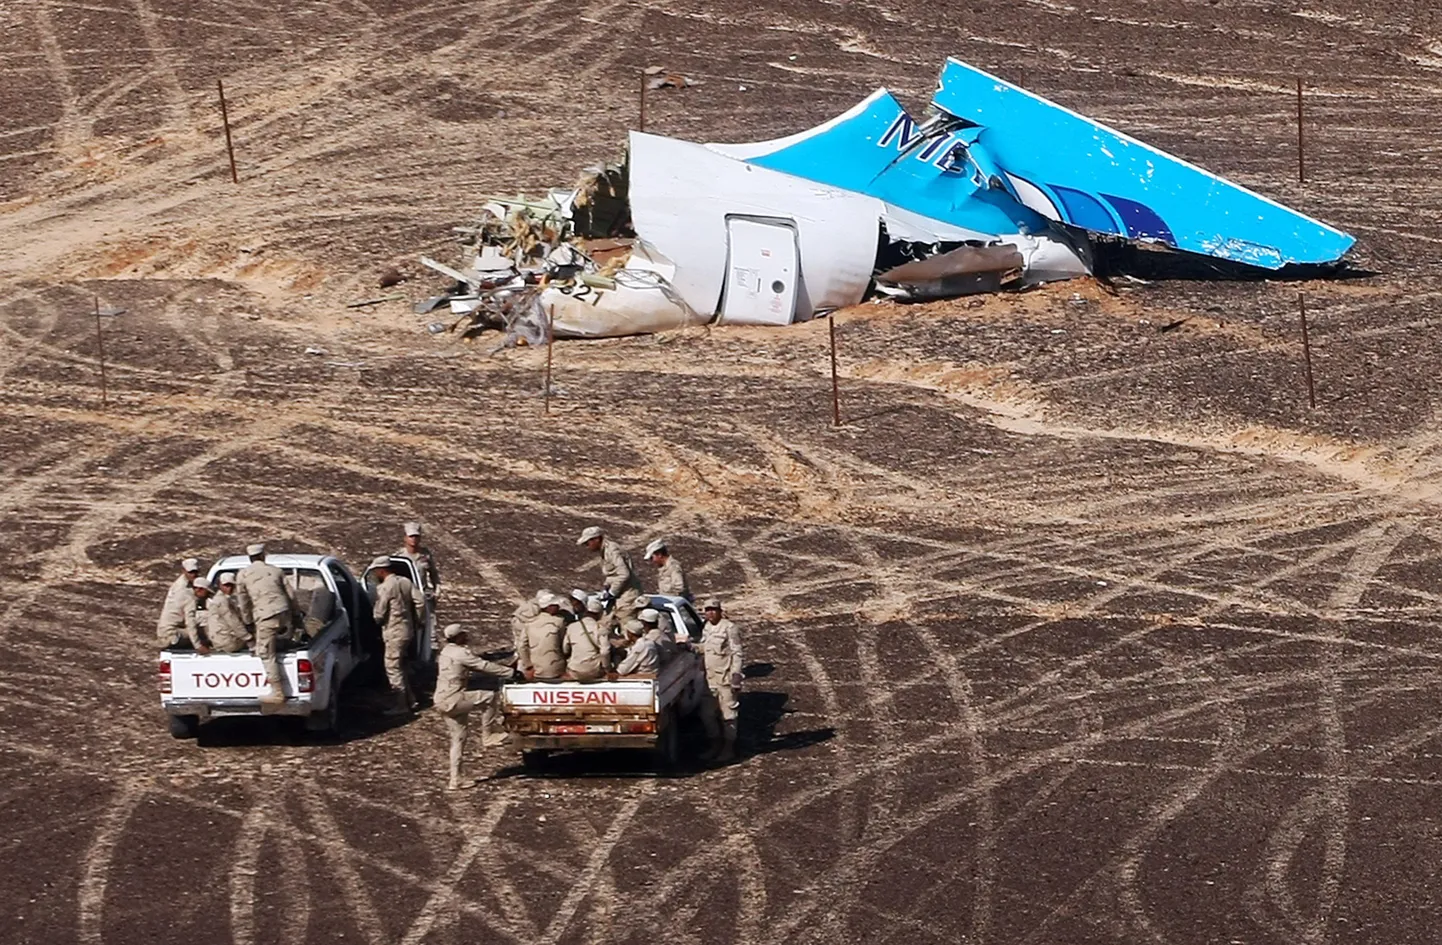 Vene hädaolukordadeministeeriumi täna väljastatud foto Egiptuse lennuõnnetuse sündmuspaigalt.